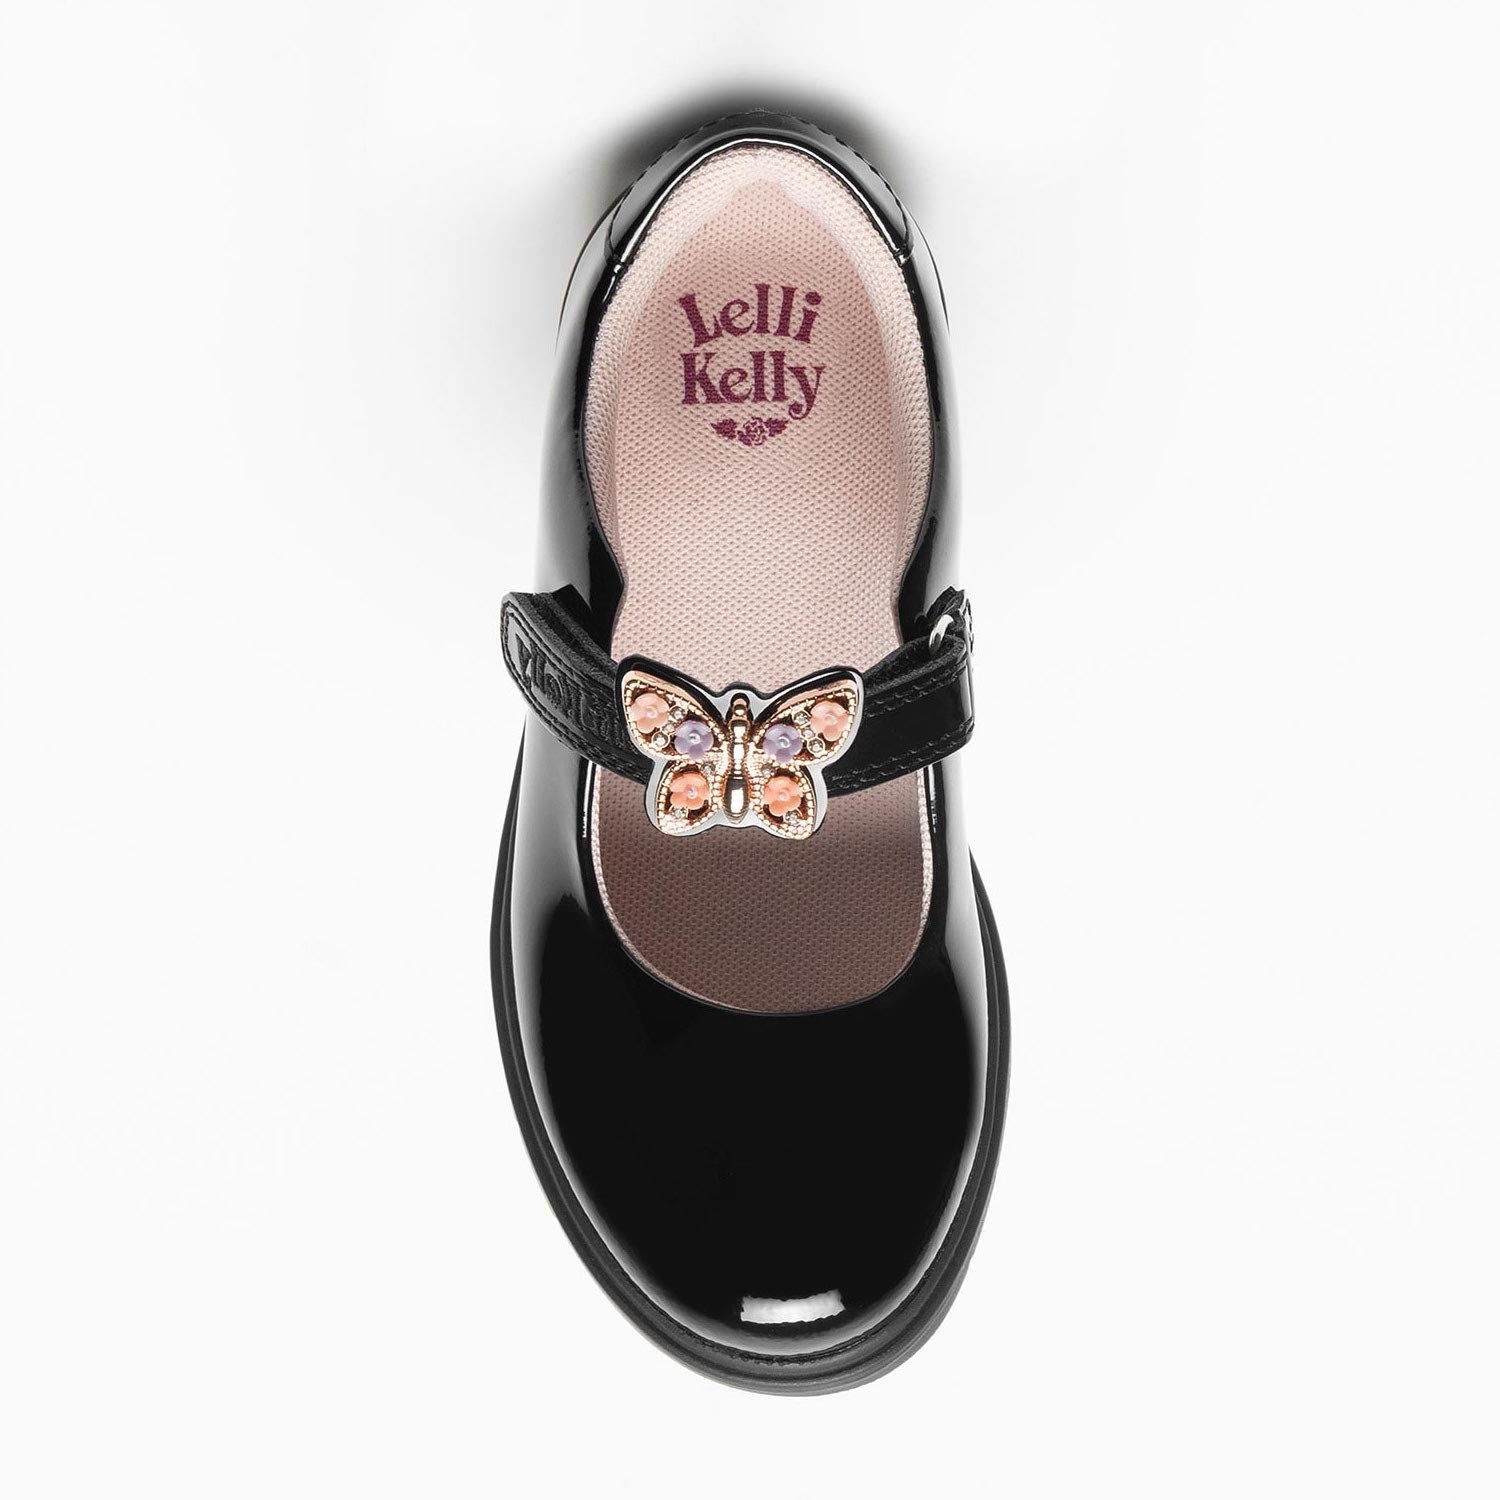 Lelli Kelly Lucy Butterfly Black Patent Girls School Shoes